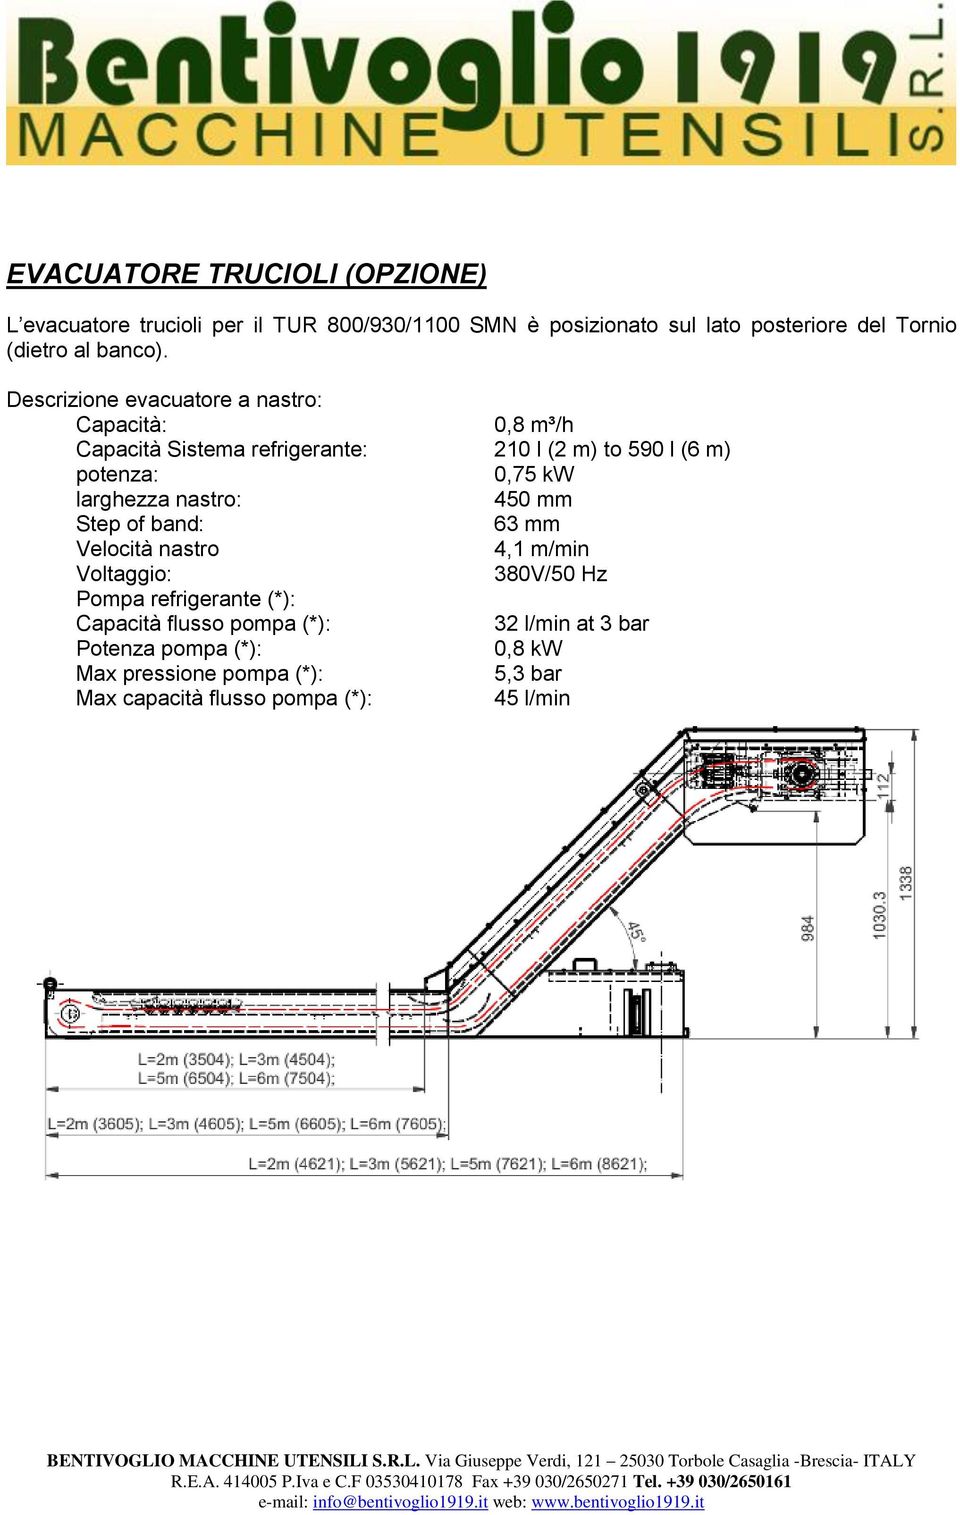 Descrizione evacuatore a nastro: Capacità: 0,8 m³/h Capacità Sistema refrigerante: 210 l (2 m) to 590 l (6 m) potenza: 0,75 kw